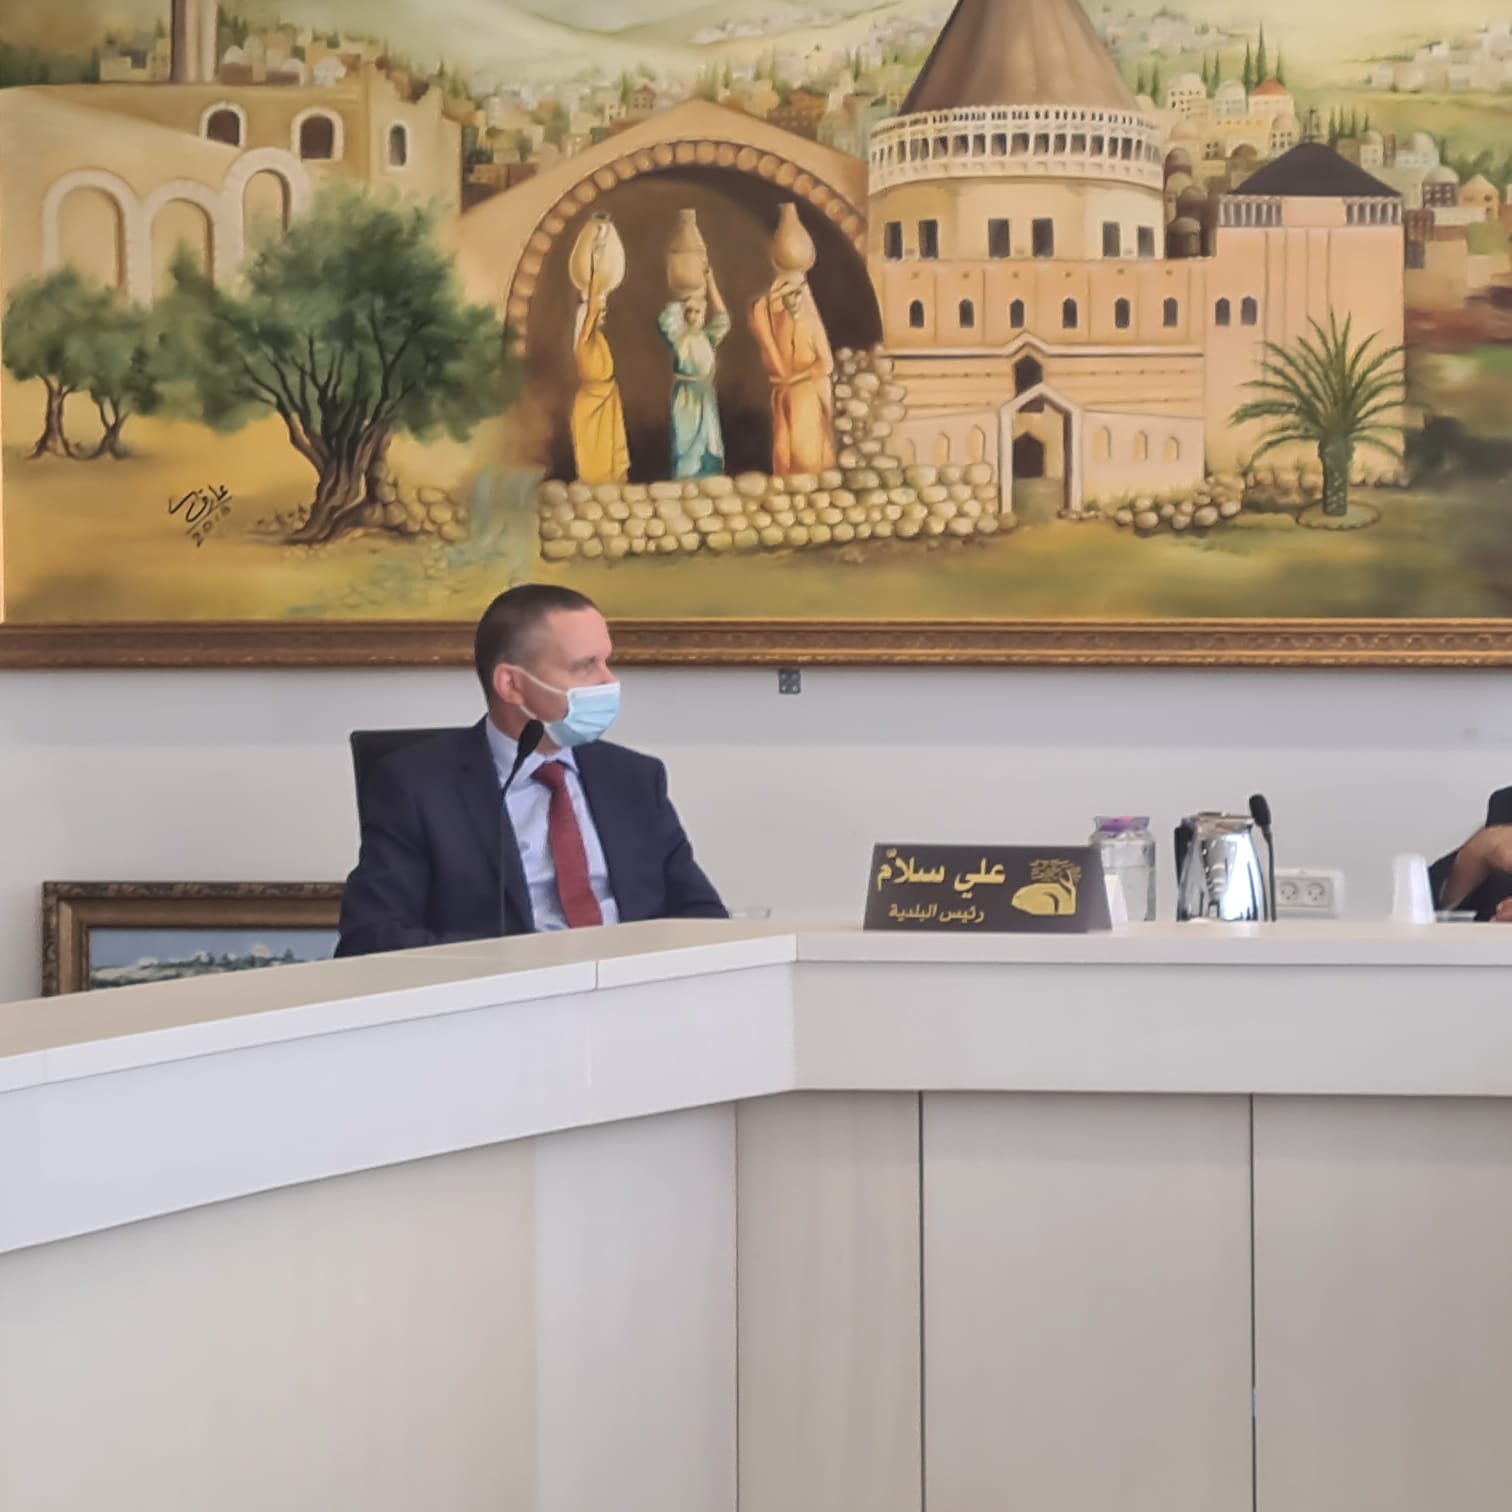 وزير العلوم والتكنولوجيا يزهار شاي في زيارة لبلدية الناصرة للاطلاع على احتياجات التكنولوجية للمدينة-3